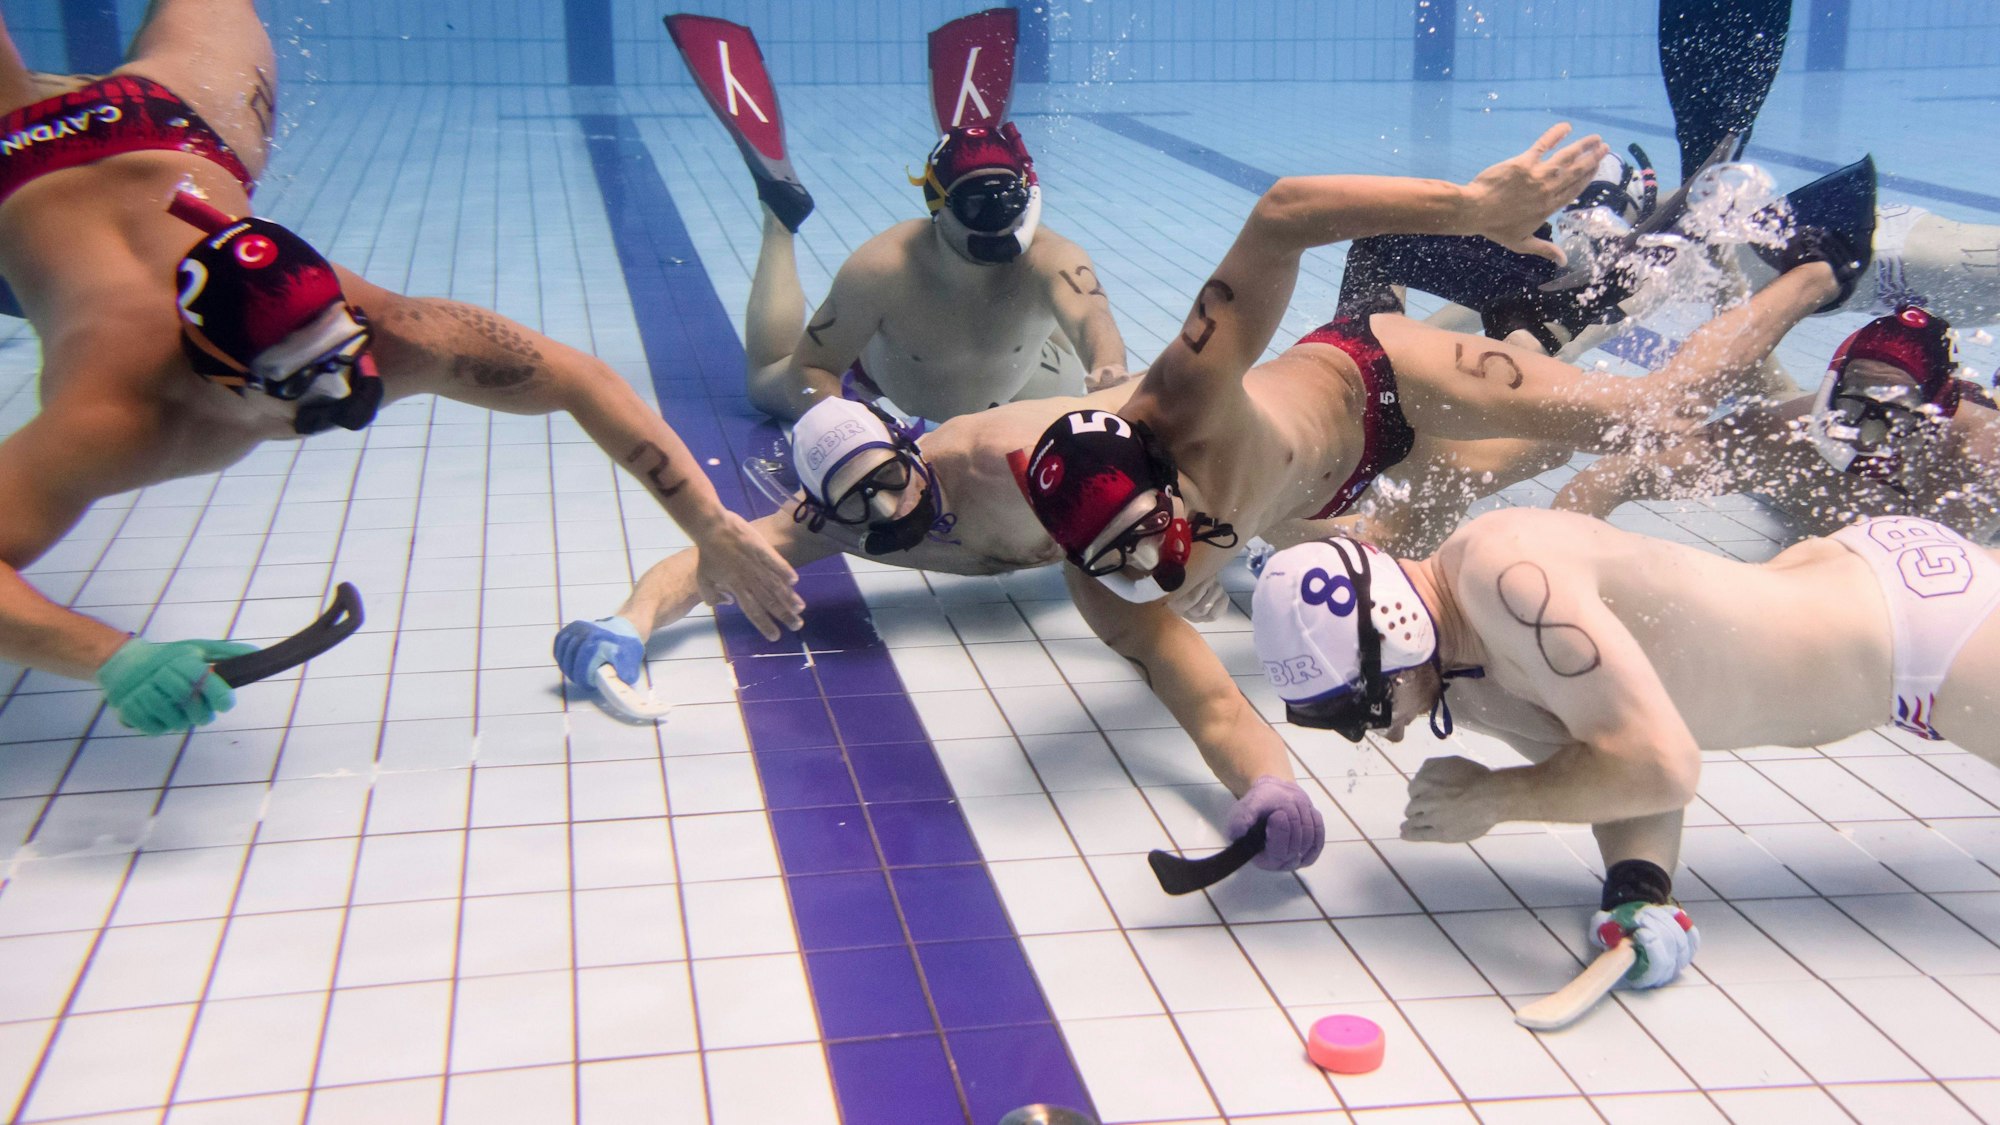 Spieler der türkischen und der deutschen Unterwasser-Hockey-Mannschaften spielen am Boden eines Schwimmbeckens